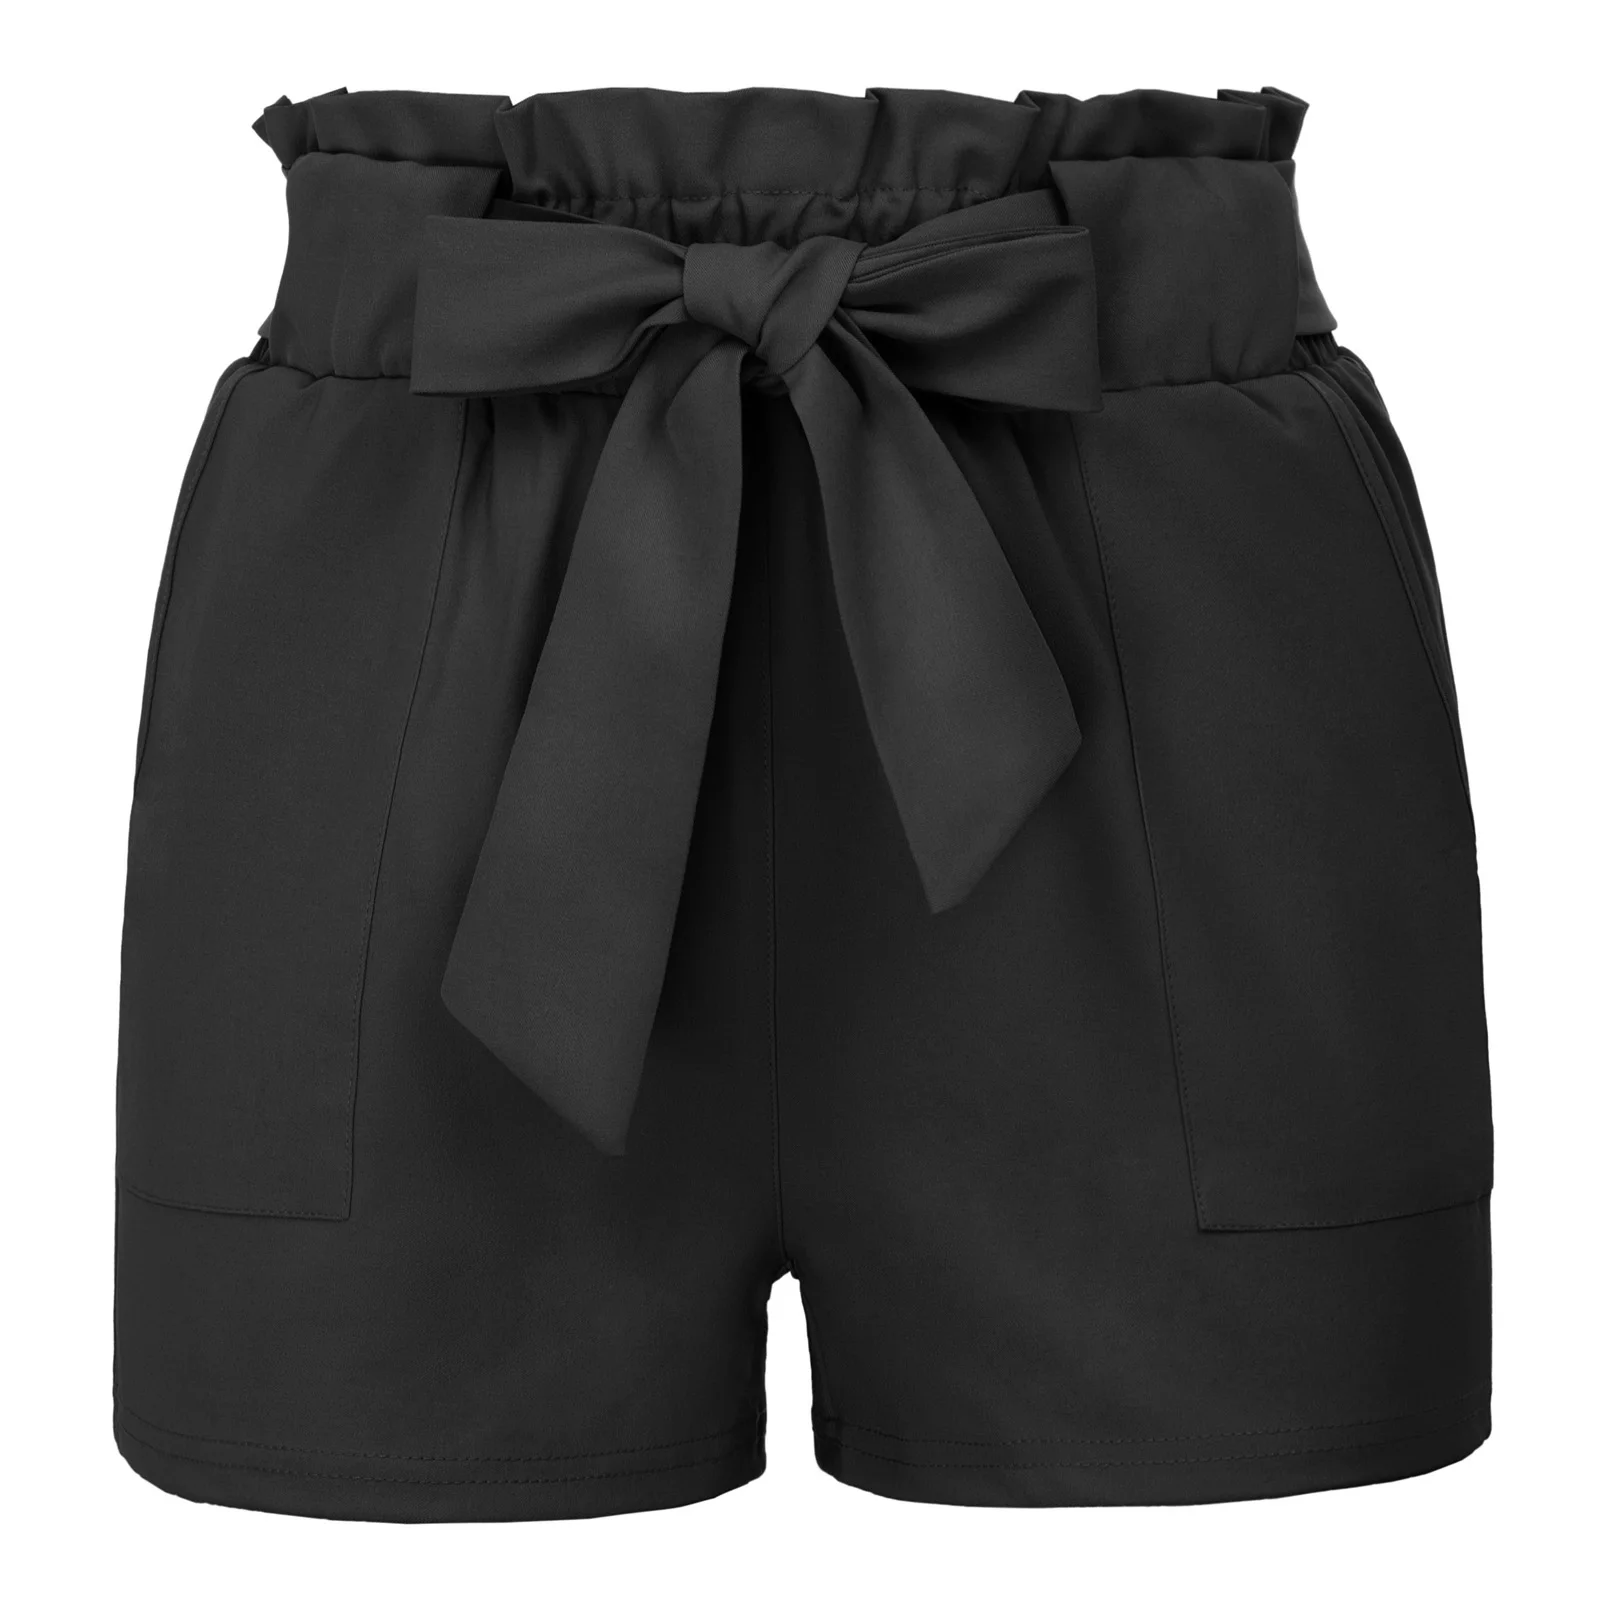 Grace Karin Женские повседневные эластичные шорты с высокой талией Мини шорты Популярные летние стильные свободные пляжные шорты с поясом - Цвет: Black